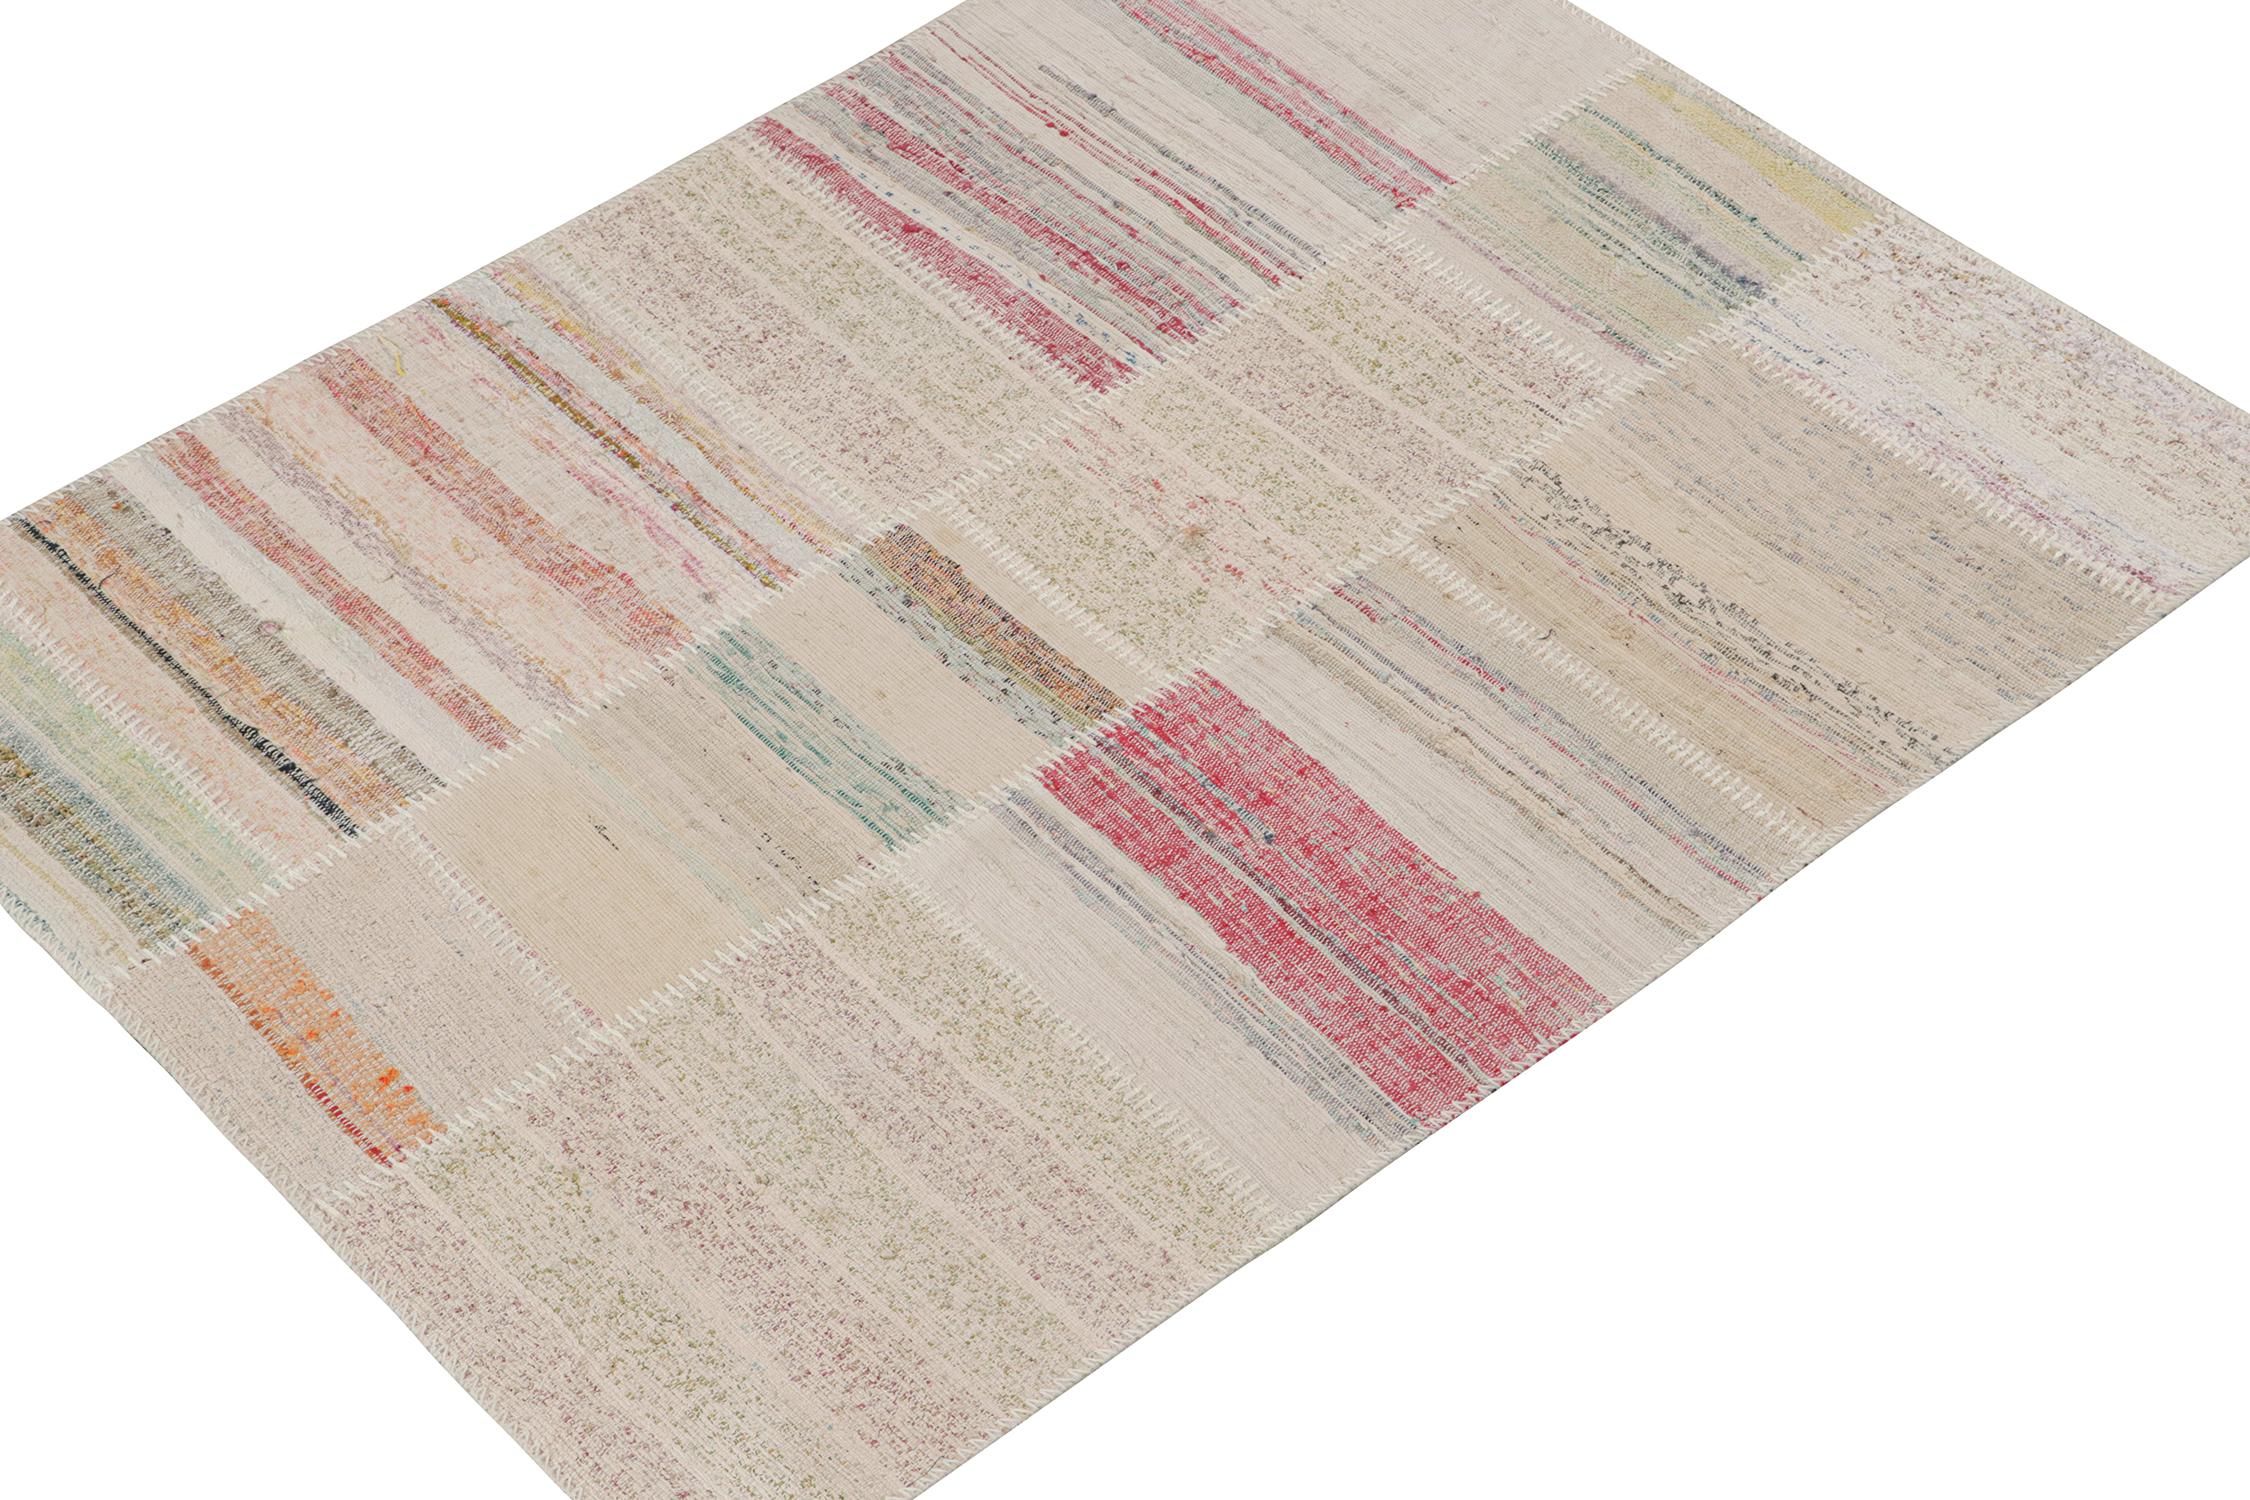 Rug & Kilim présente un tapis contemporain 4x5 de leur nouvelle collection innovante de kilim en patchwork.

Plus loin sur le Design :

Cette technique de tissage à plat réutilise des fils vintage dans des rayures et des stries polychromatiques,